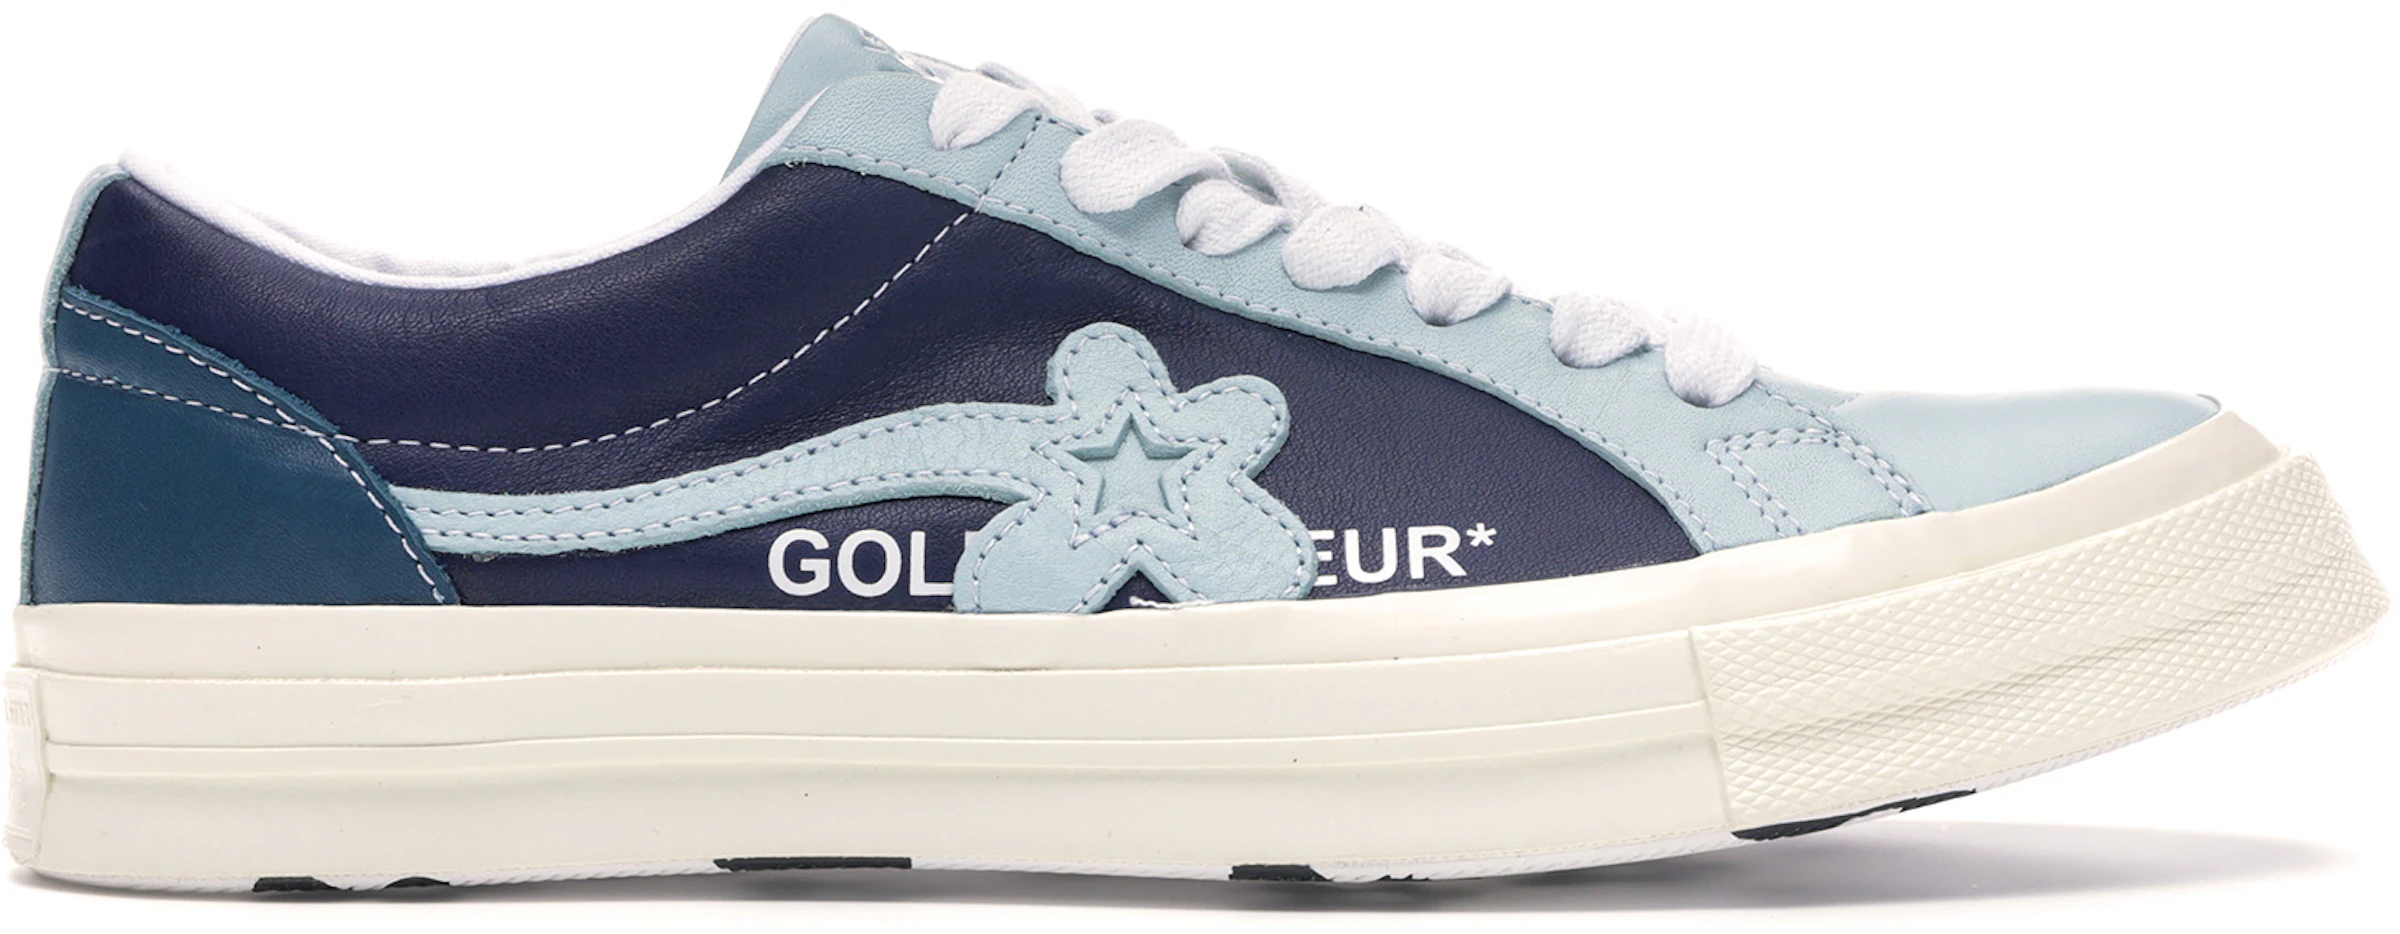 Converse Star Golf Le Fleur Pack Barely Blue - 164024C - ES